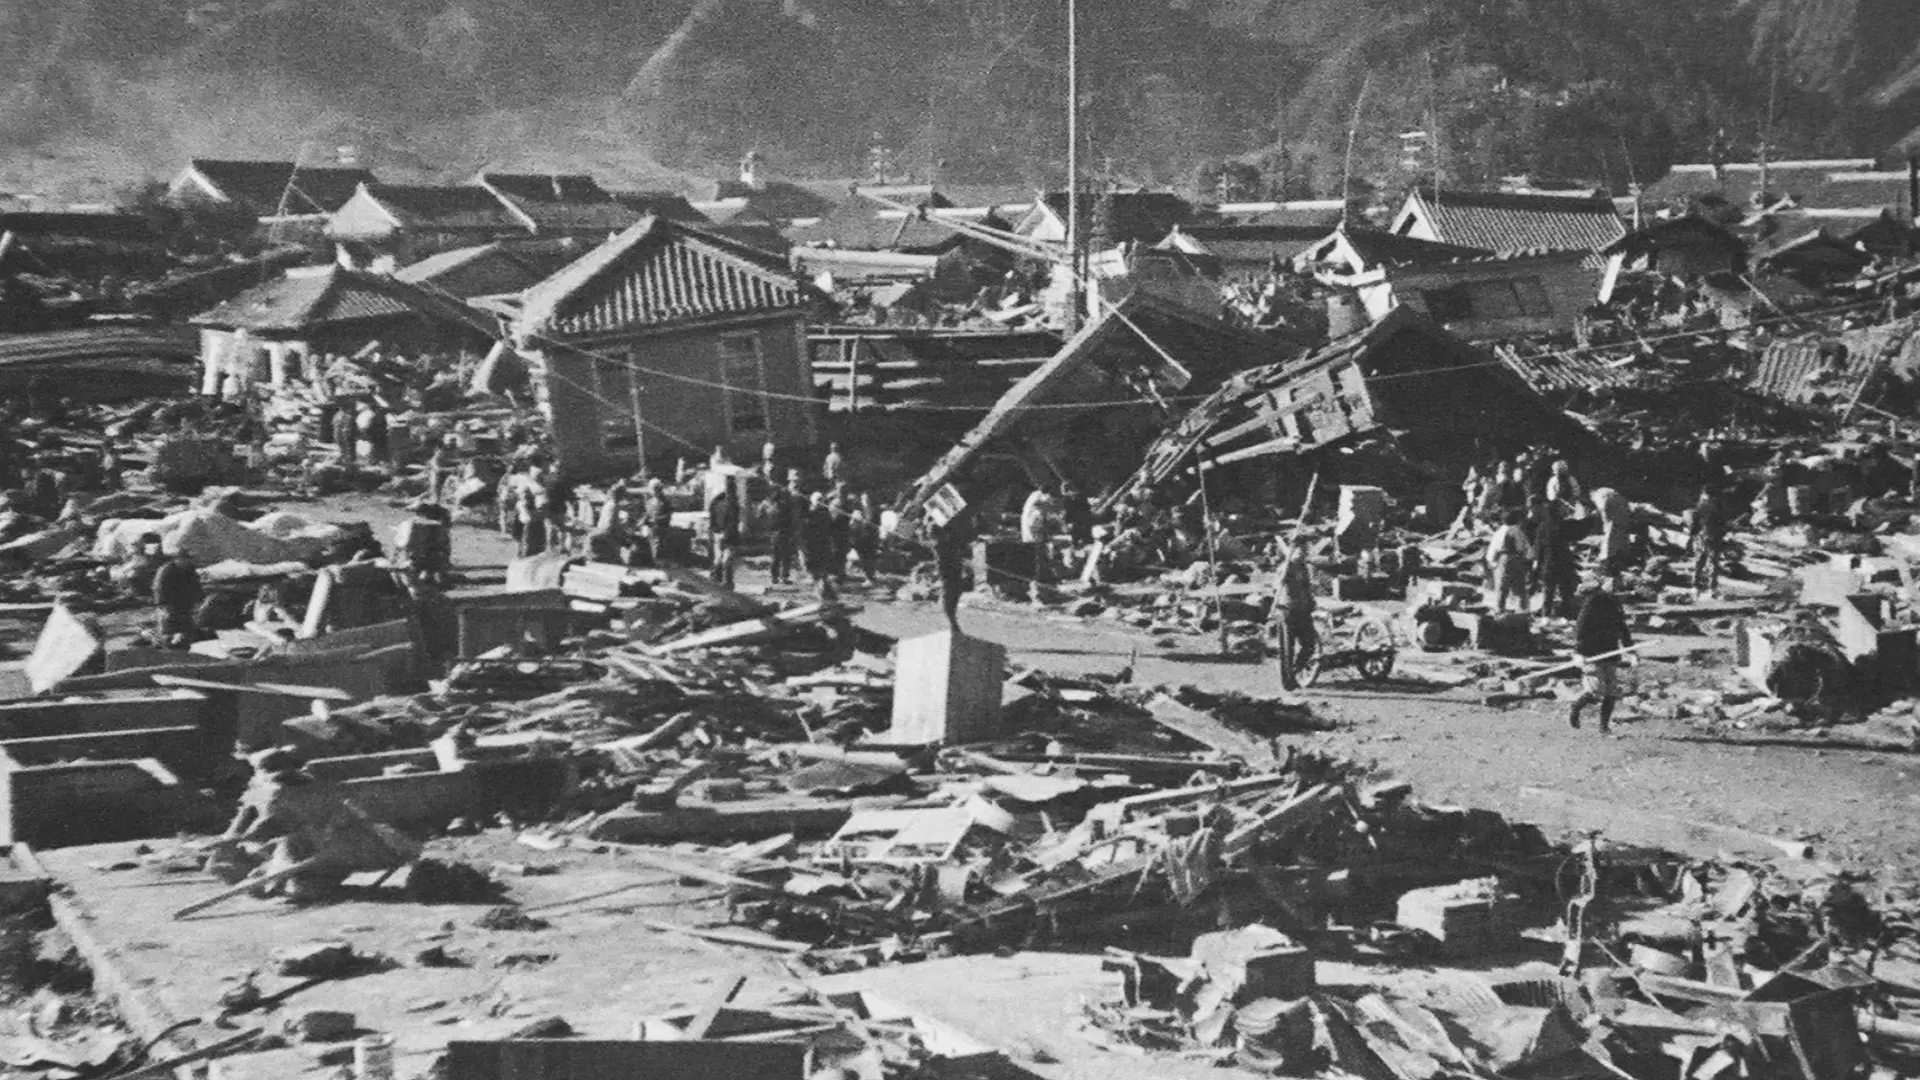 Daños en la ciudad de Owase, condado de Kitamuro, prefectura de Mie, causados por el terremoto Showa Tonankai el 7 de diciembre de 1944. Tuvo una magnitud estimada de 8,1 en la escala de magnitud del momento.